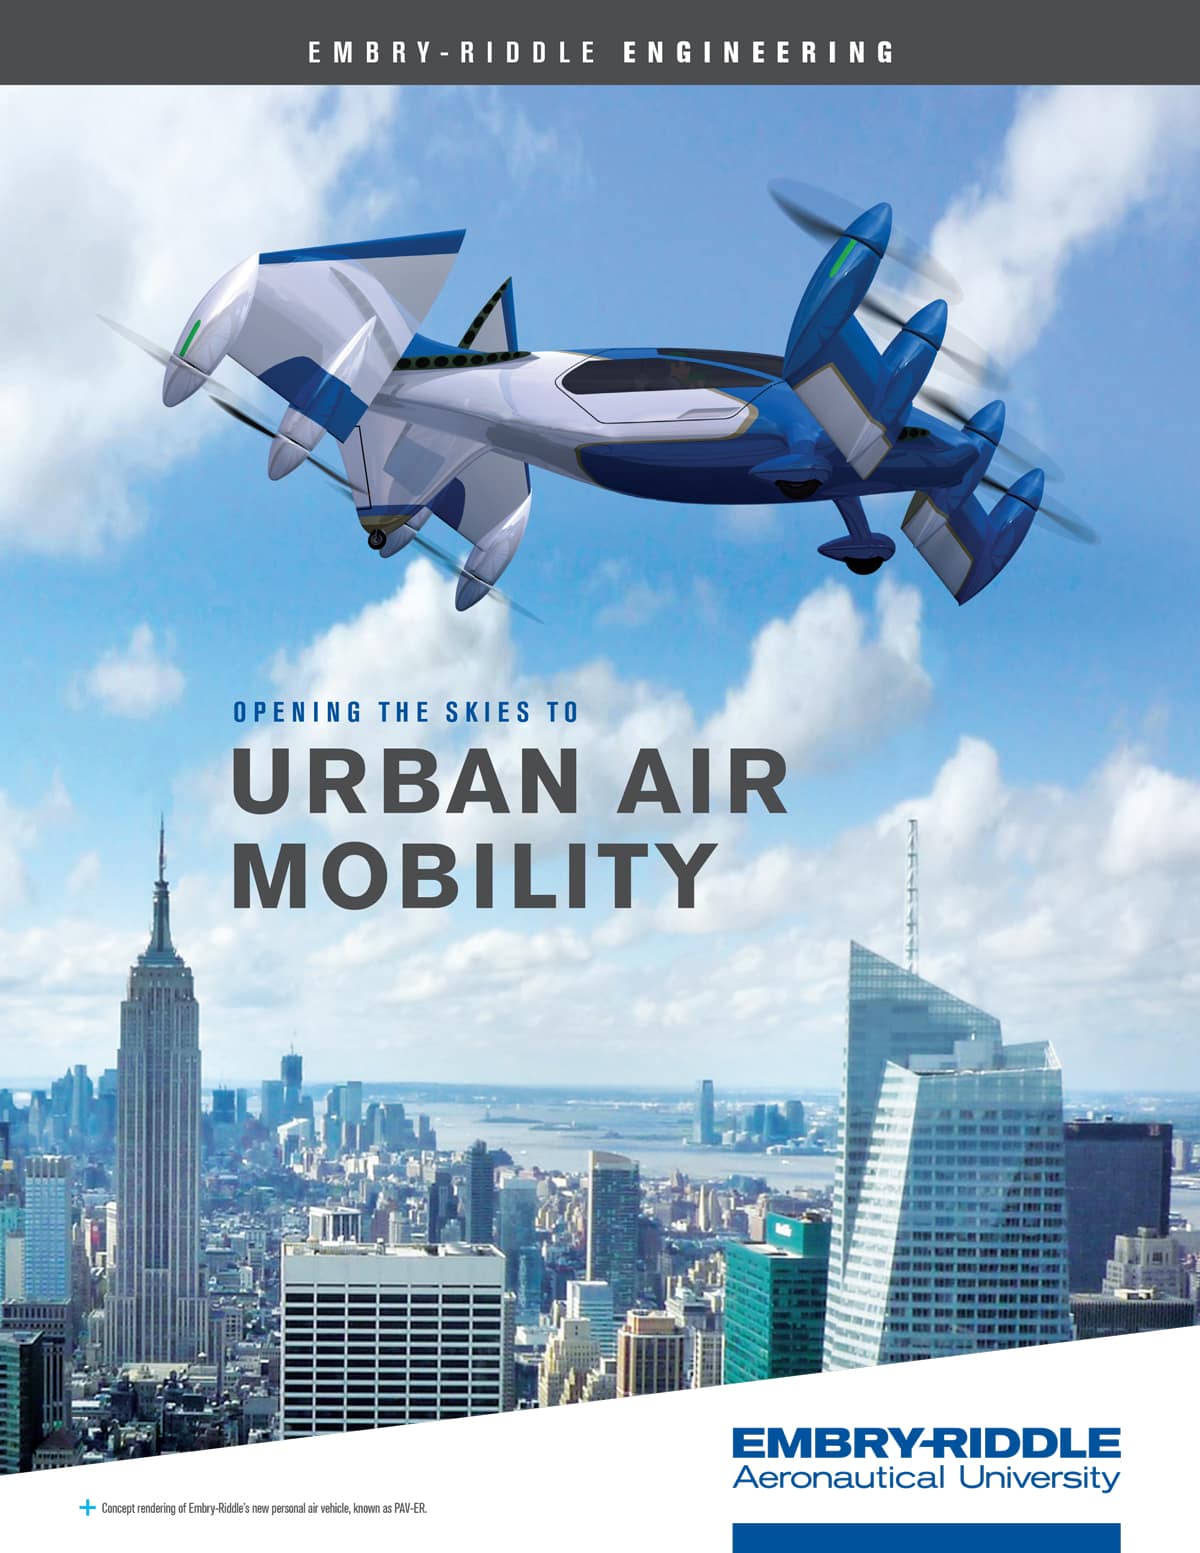 Urban Air Mobility